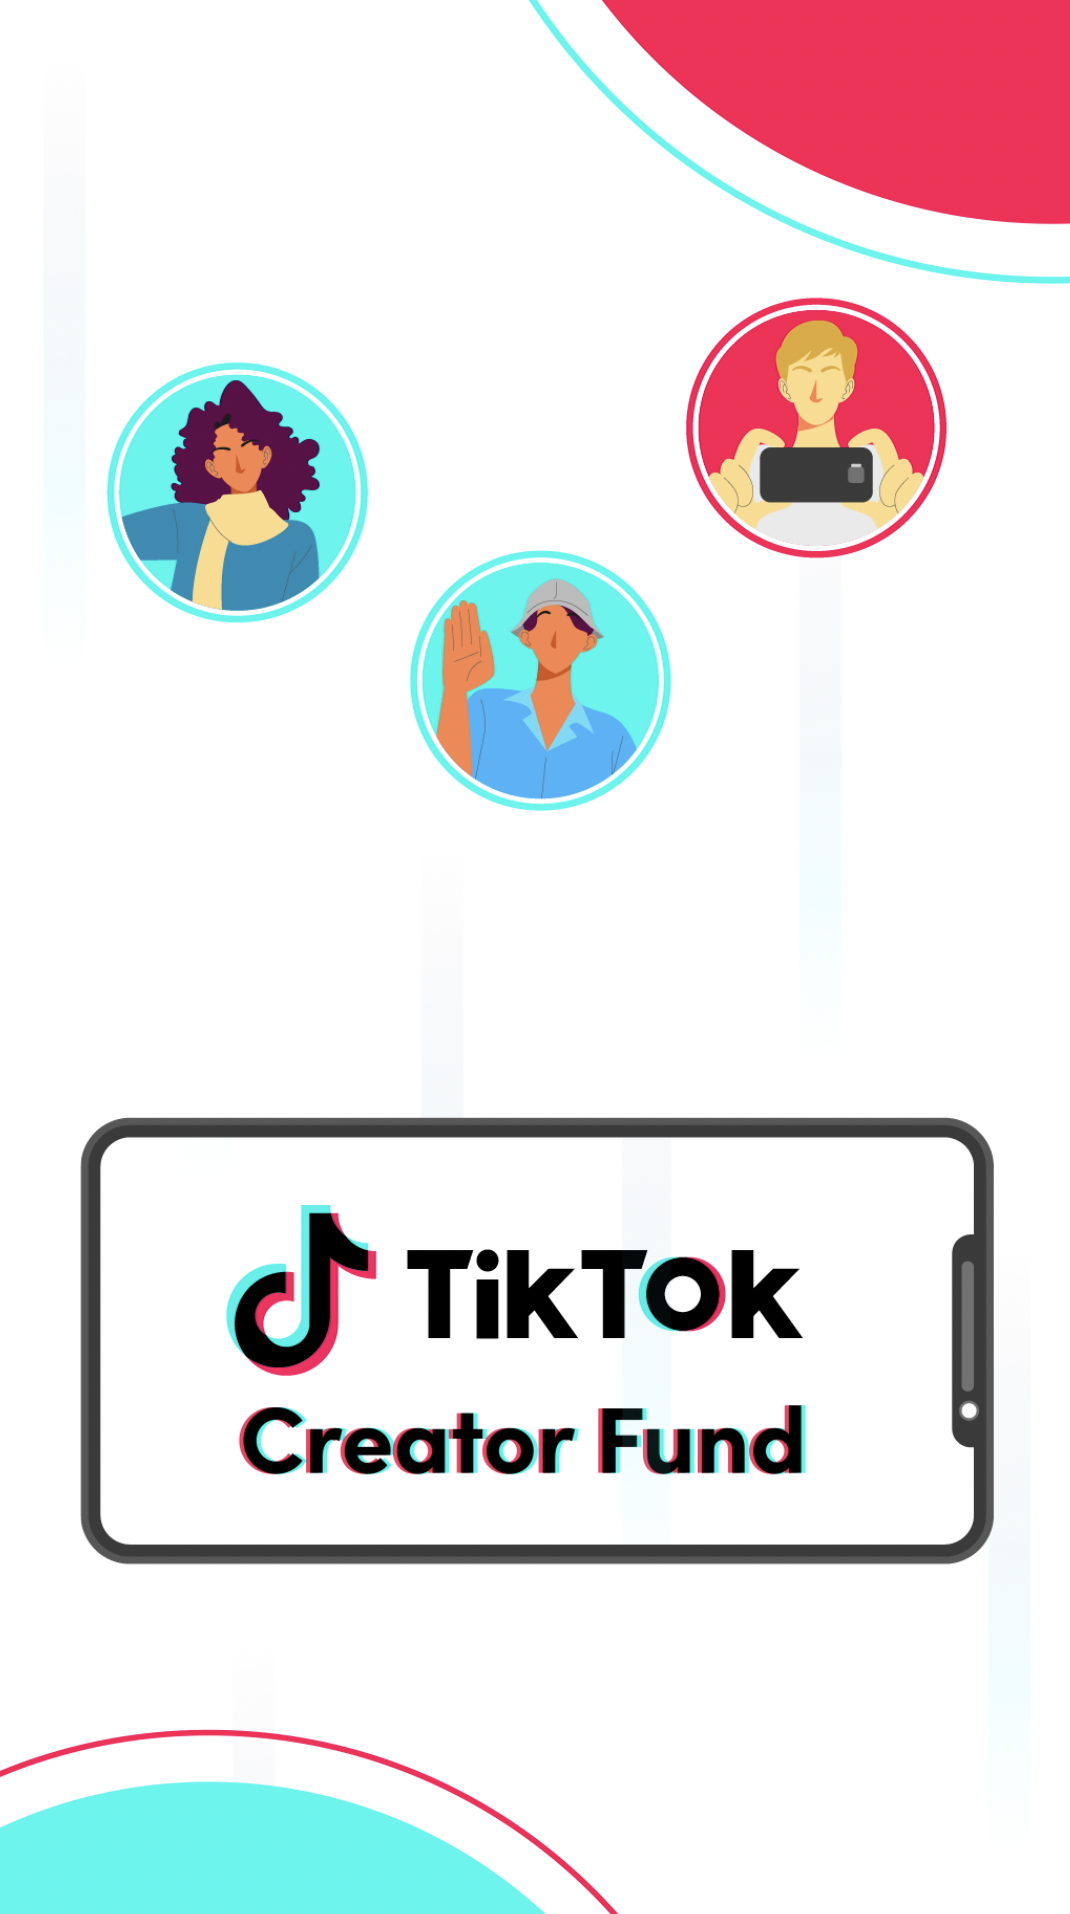 El TikTok Creator Fund es una forma aprobada por la aplicación para ganar dinero. A través de esta herramienta, la plataforma selecciona a algunos creadores de contenido y les paga por las visualizaciones de sus videos para impulsar la creatividad y ayudar a crecer sus perfiles. Puedes solicitar unirte directamente desde la aplicación, aunque es importante tener en cuenta que no todos los solicitantes son seleccionados. ¡No te rindas y sigue intentándolo!